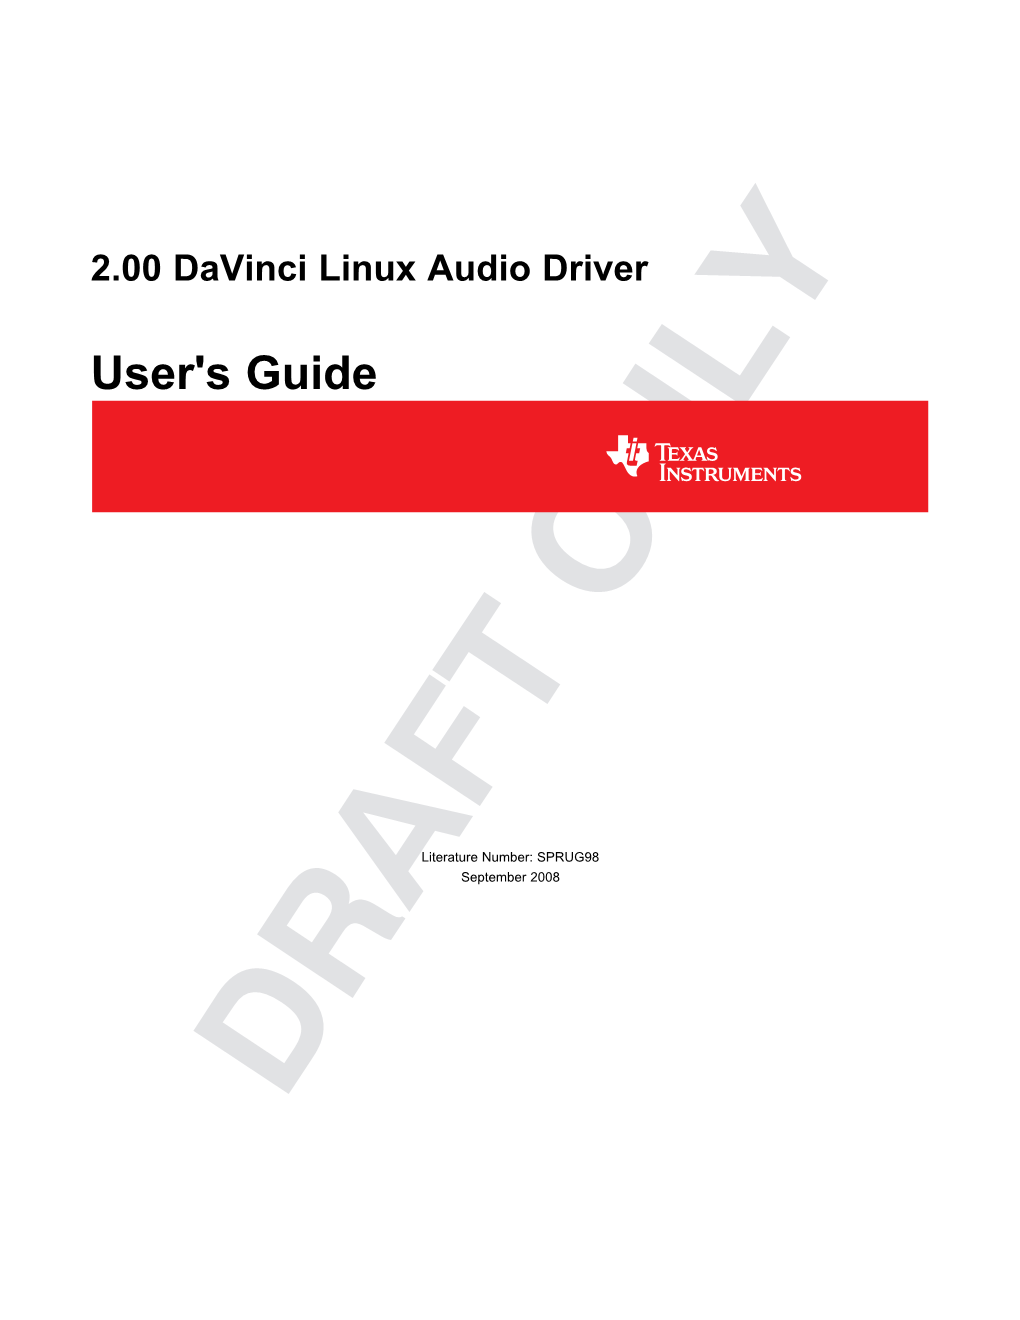 LSP 2.00 Davinci Linux Audio Driver Guide